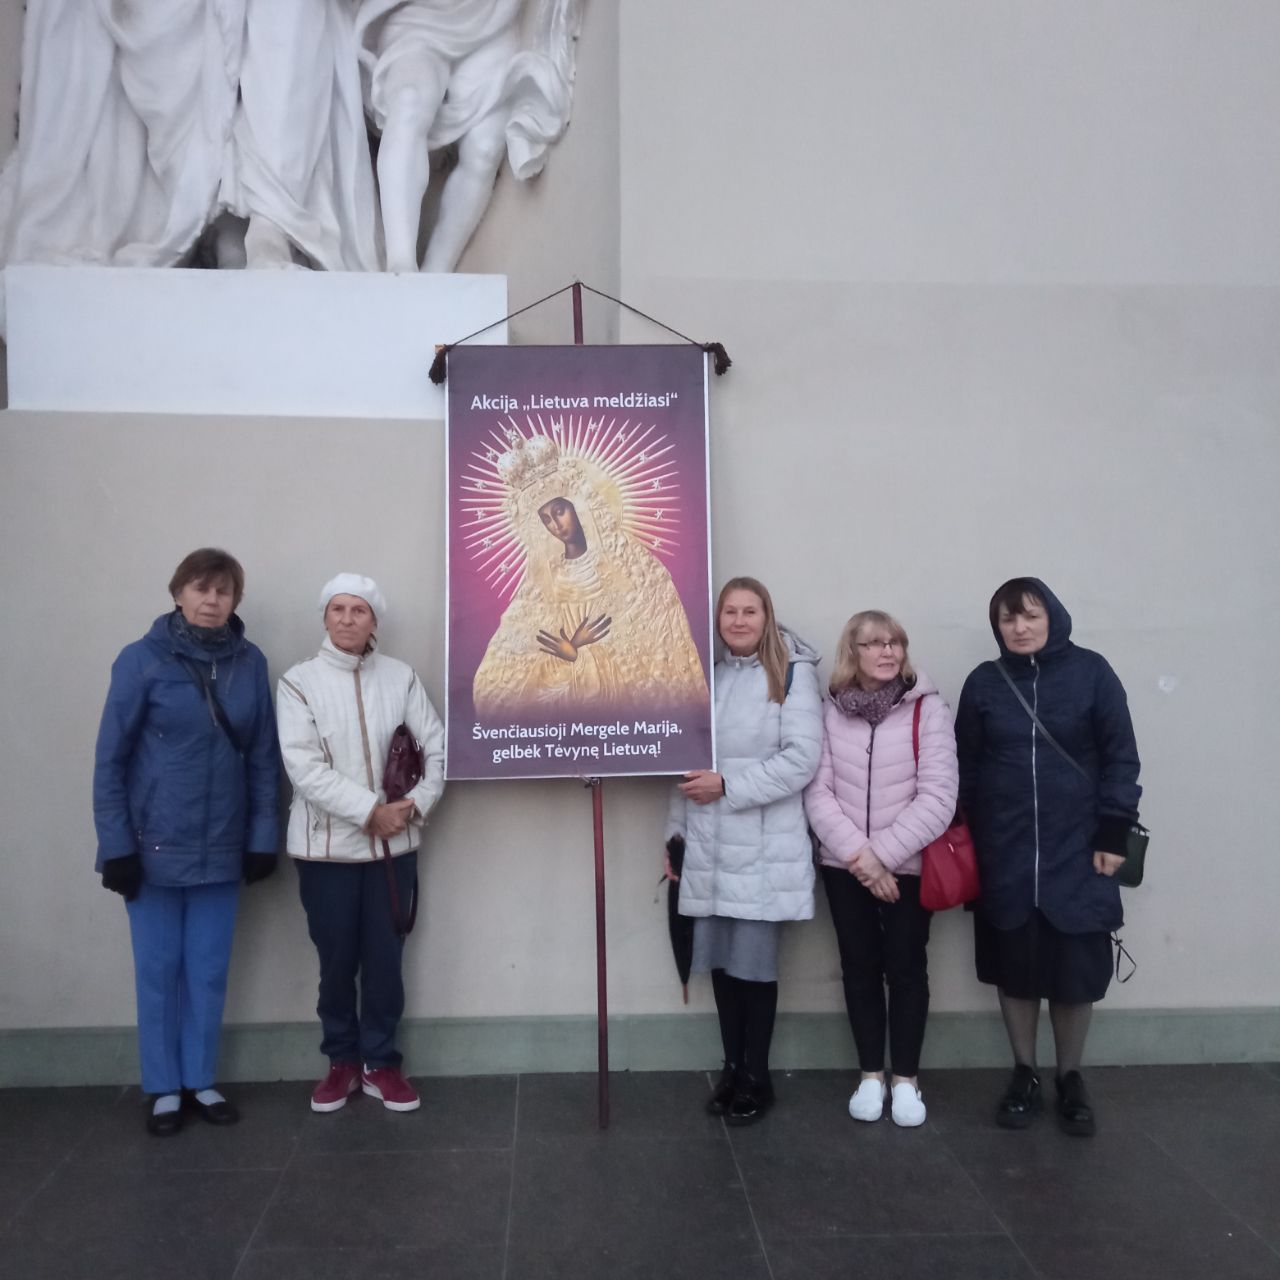 Vilniuje spalio 4d. meldėsi 5 maldininkai.
